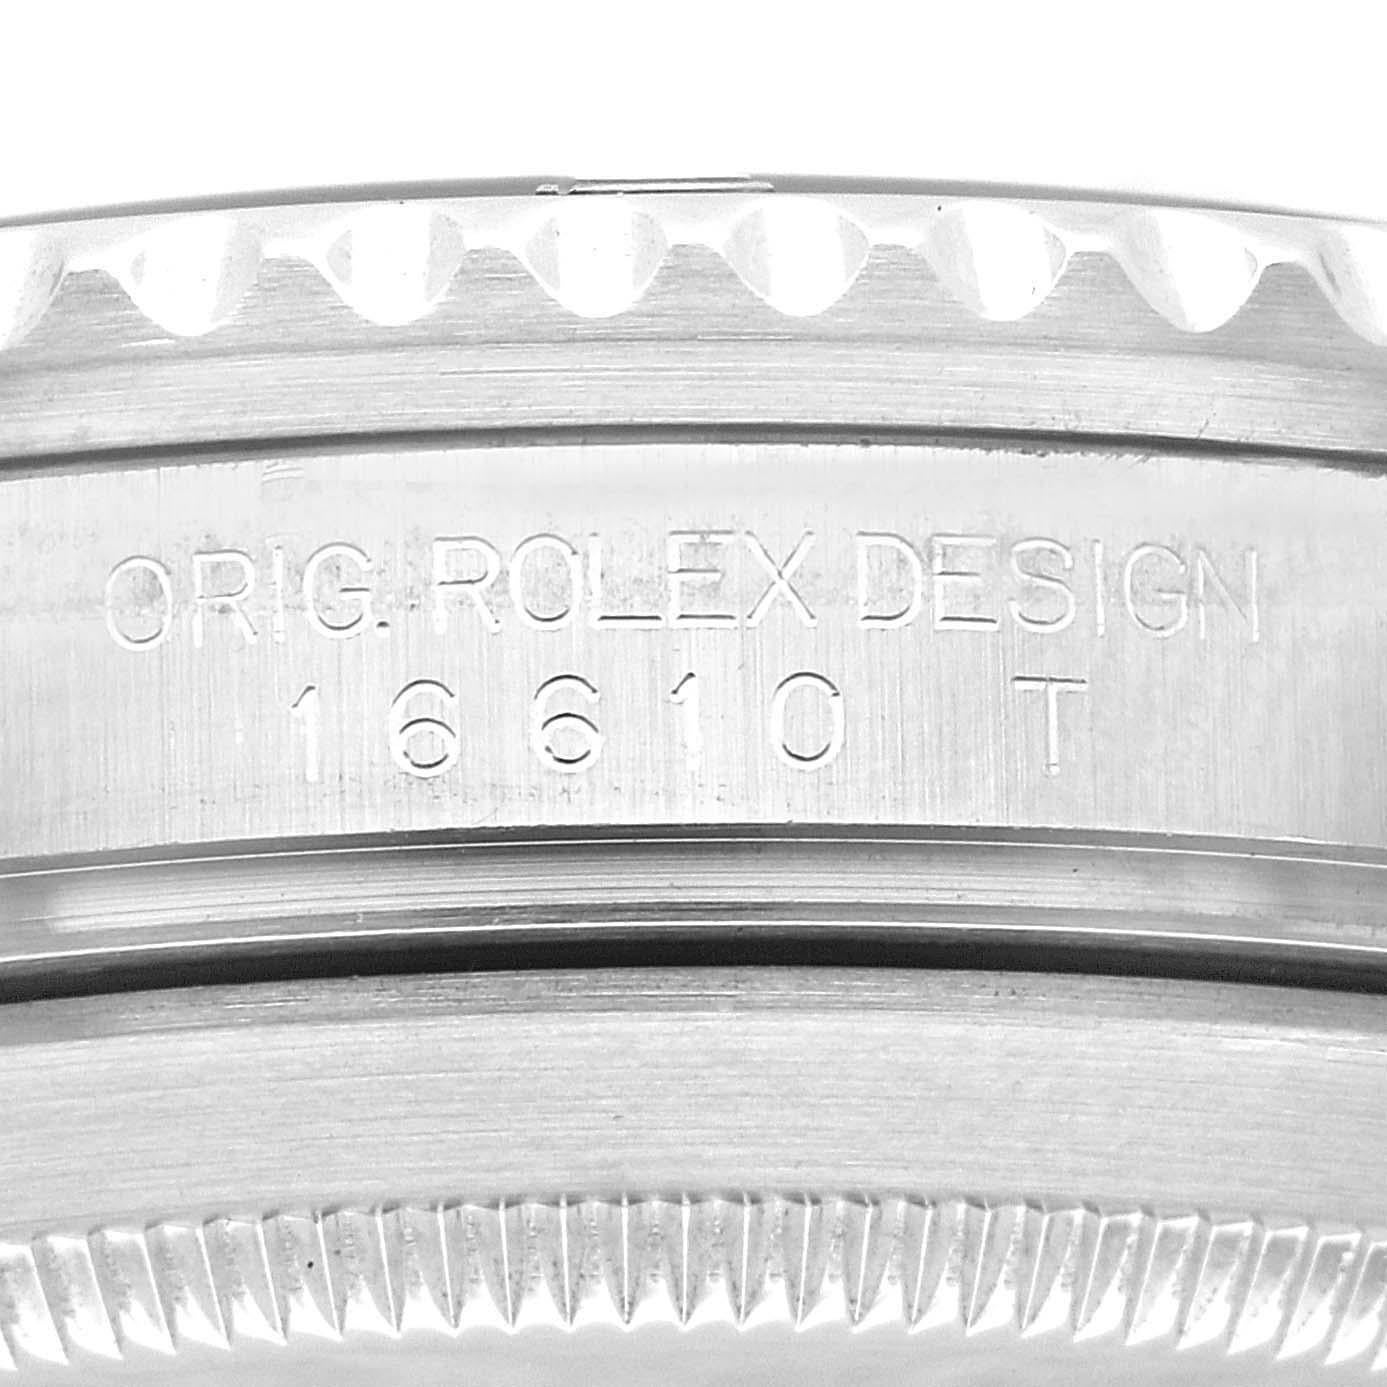 Rolex Submariner Date Schwarzes Zifferblatt Stahl Herrenuhr 16610. Offiziell zertifiziertes Chronometerwerk mit automatischem Aufzug. Gehäuse aus Edelstahl mit einem Durchmesser von 40.0 mm. Rolex Logo auf der Krone. Spezielle einseitig drehbare